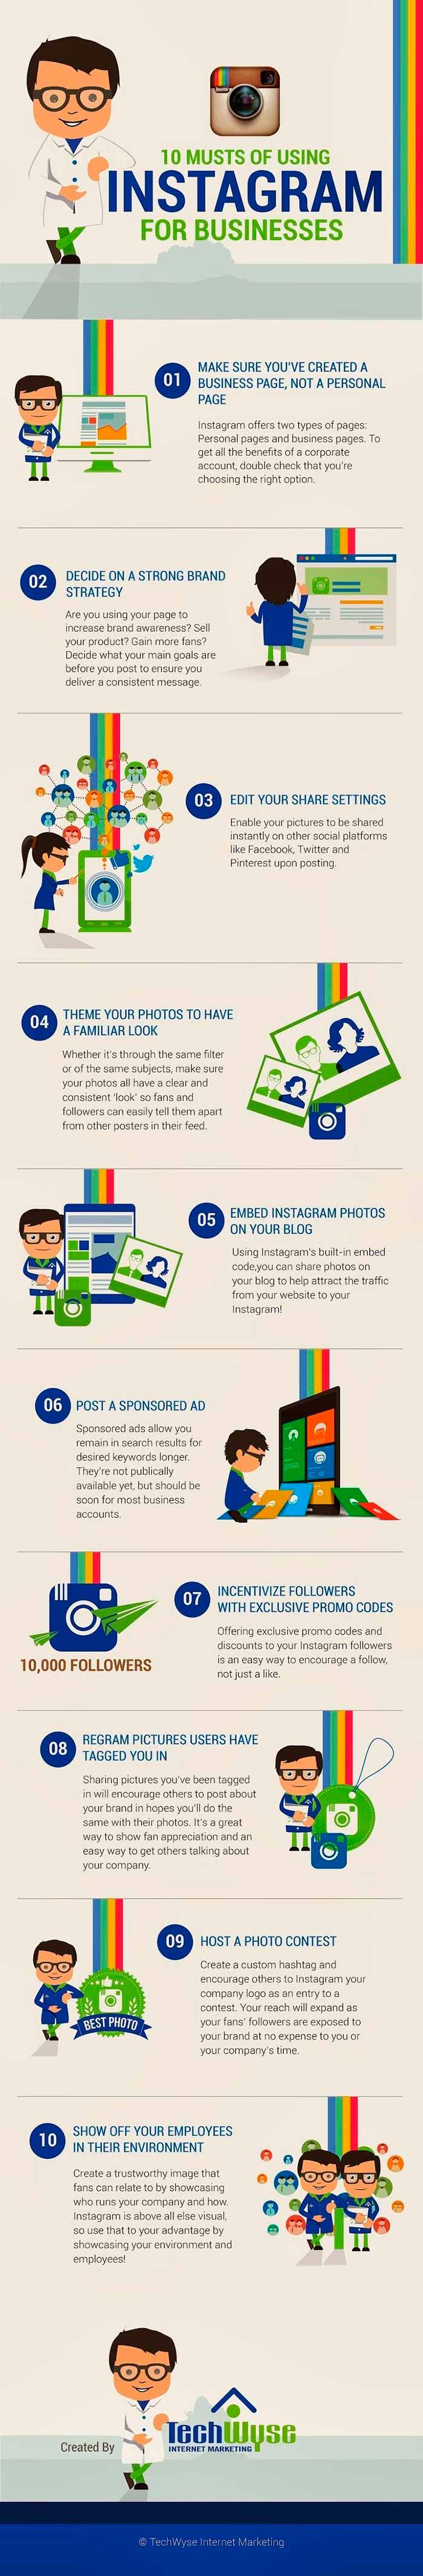 infografia sobre las 10 claves para usar instagram en la empresa